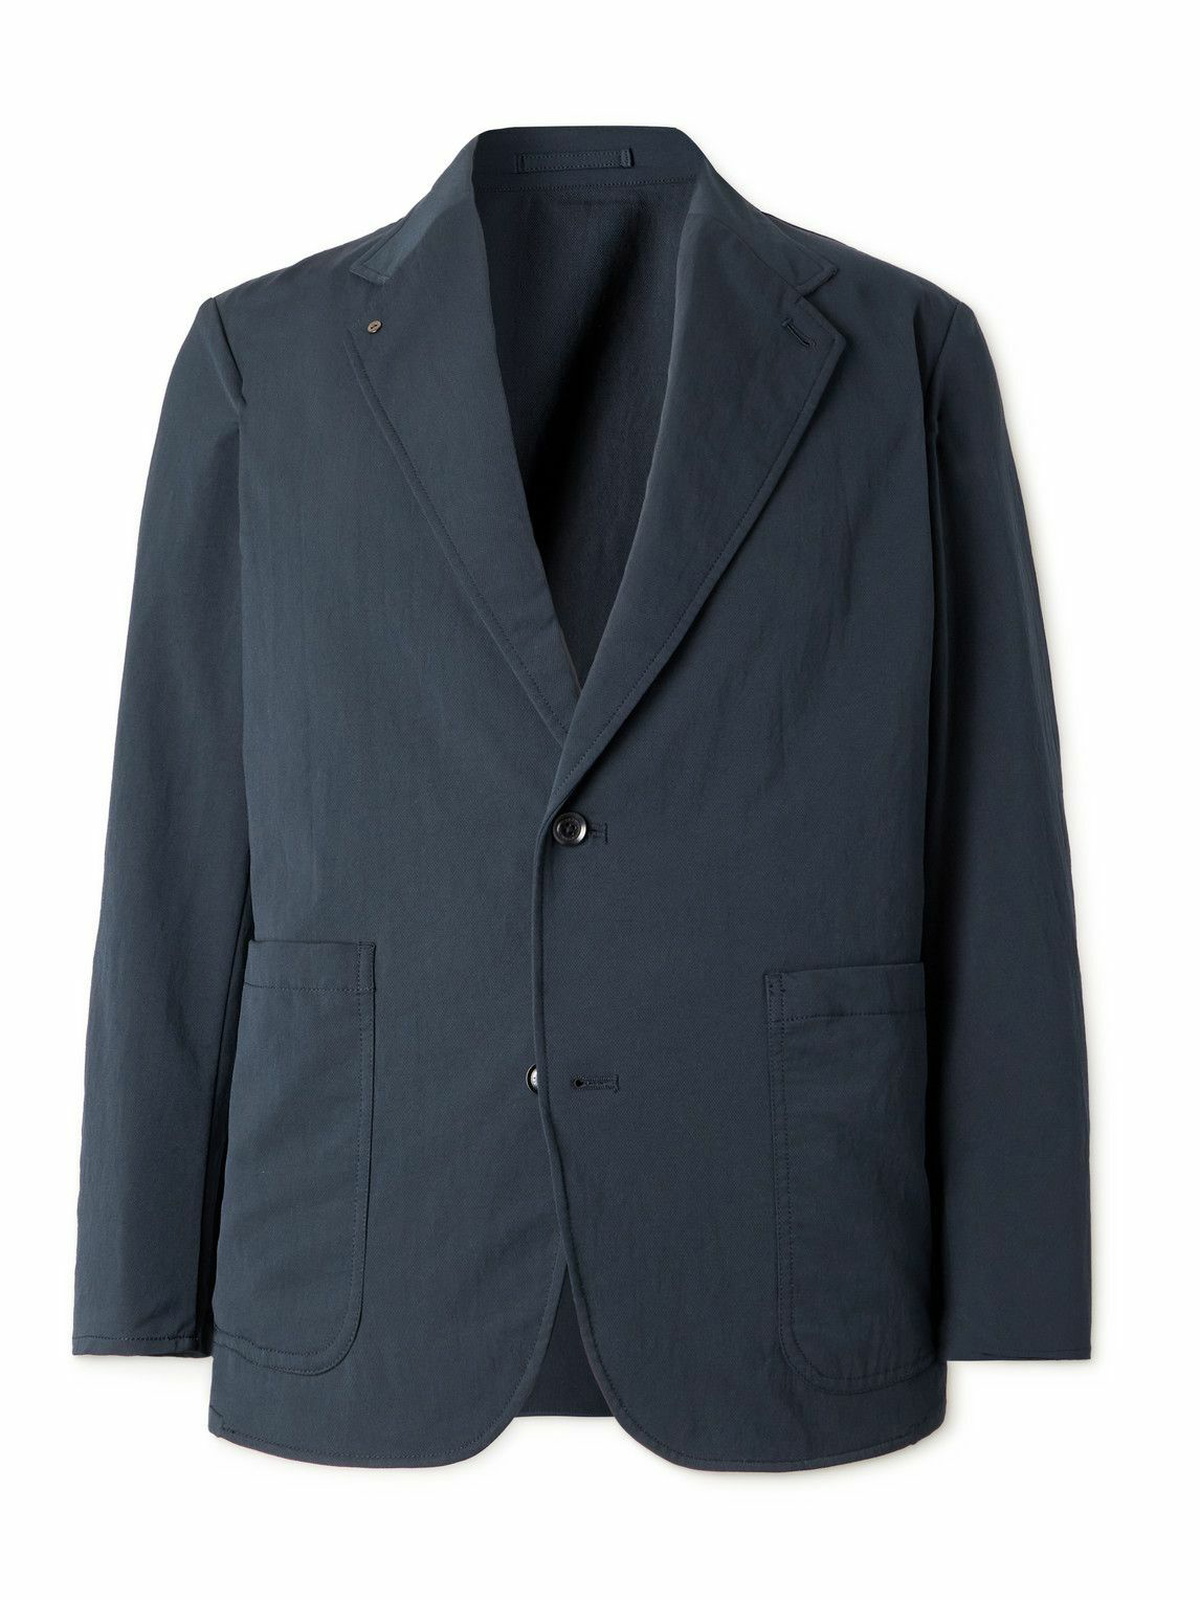 nanamica - ALPHADRY® Suit Jacket - Blue Nanamica